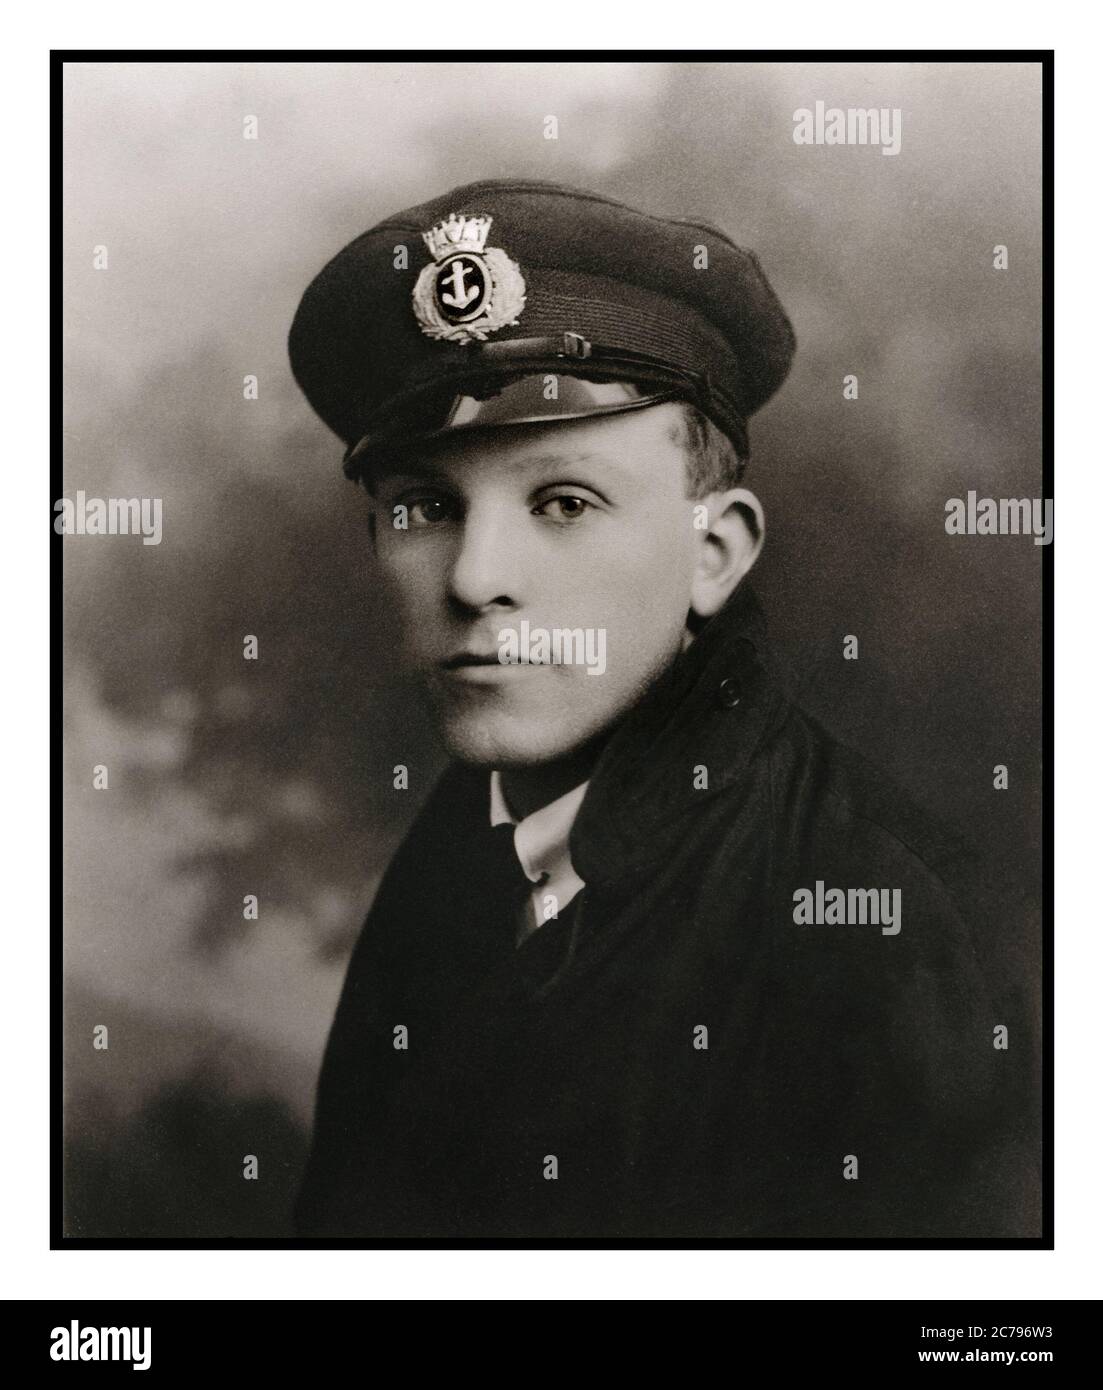 Merchant Navy Seaman in Uniform Archiv Studio Portrait von 18-20 Jahren britischer Handelsmarine 1920er Jahre in Uniform mit Cap Abzeichen, das das Wappen der britischen Merchant Navy Service zeigt Stockfoto